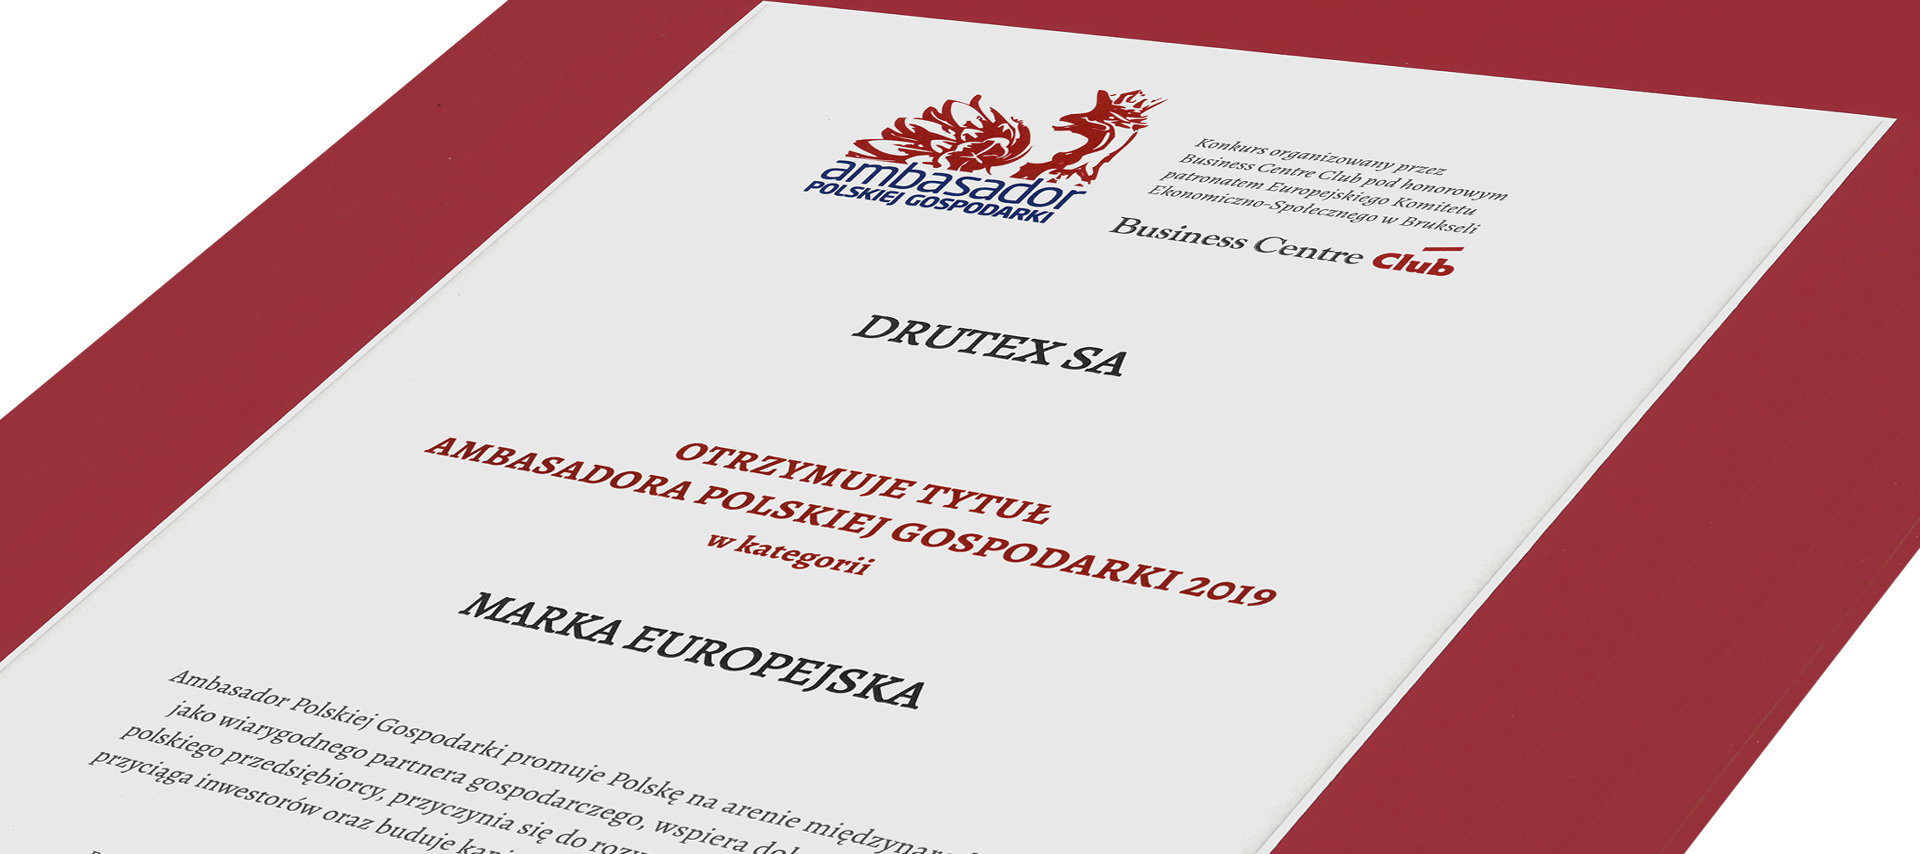 Drutex erneut ausgezeichnet mit dem Titel „Botschafter der polnischen Wirtschaft“